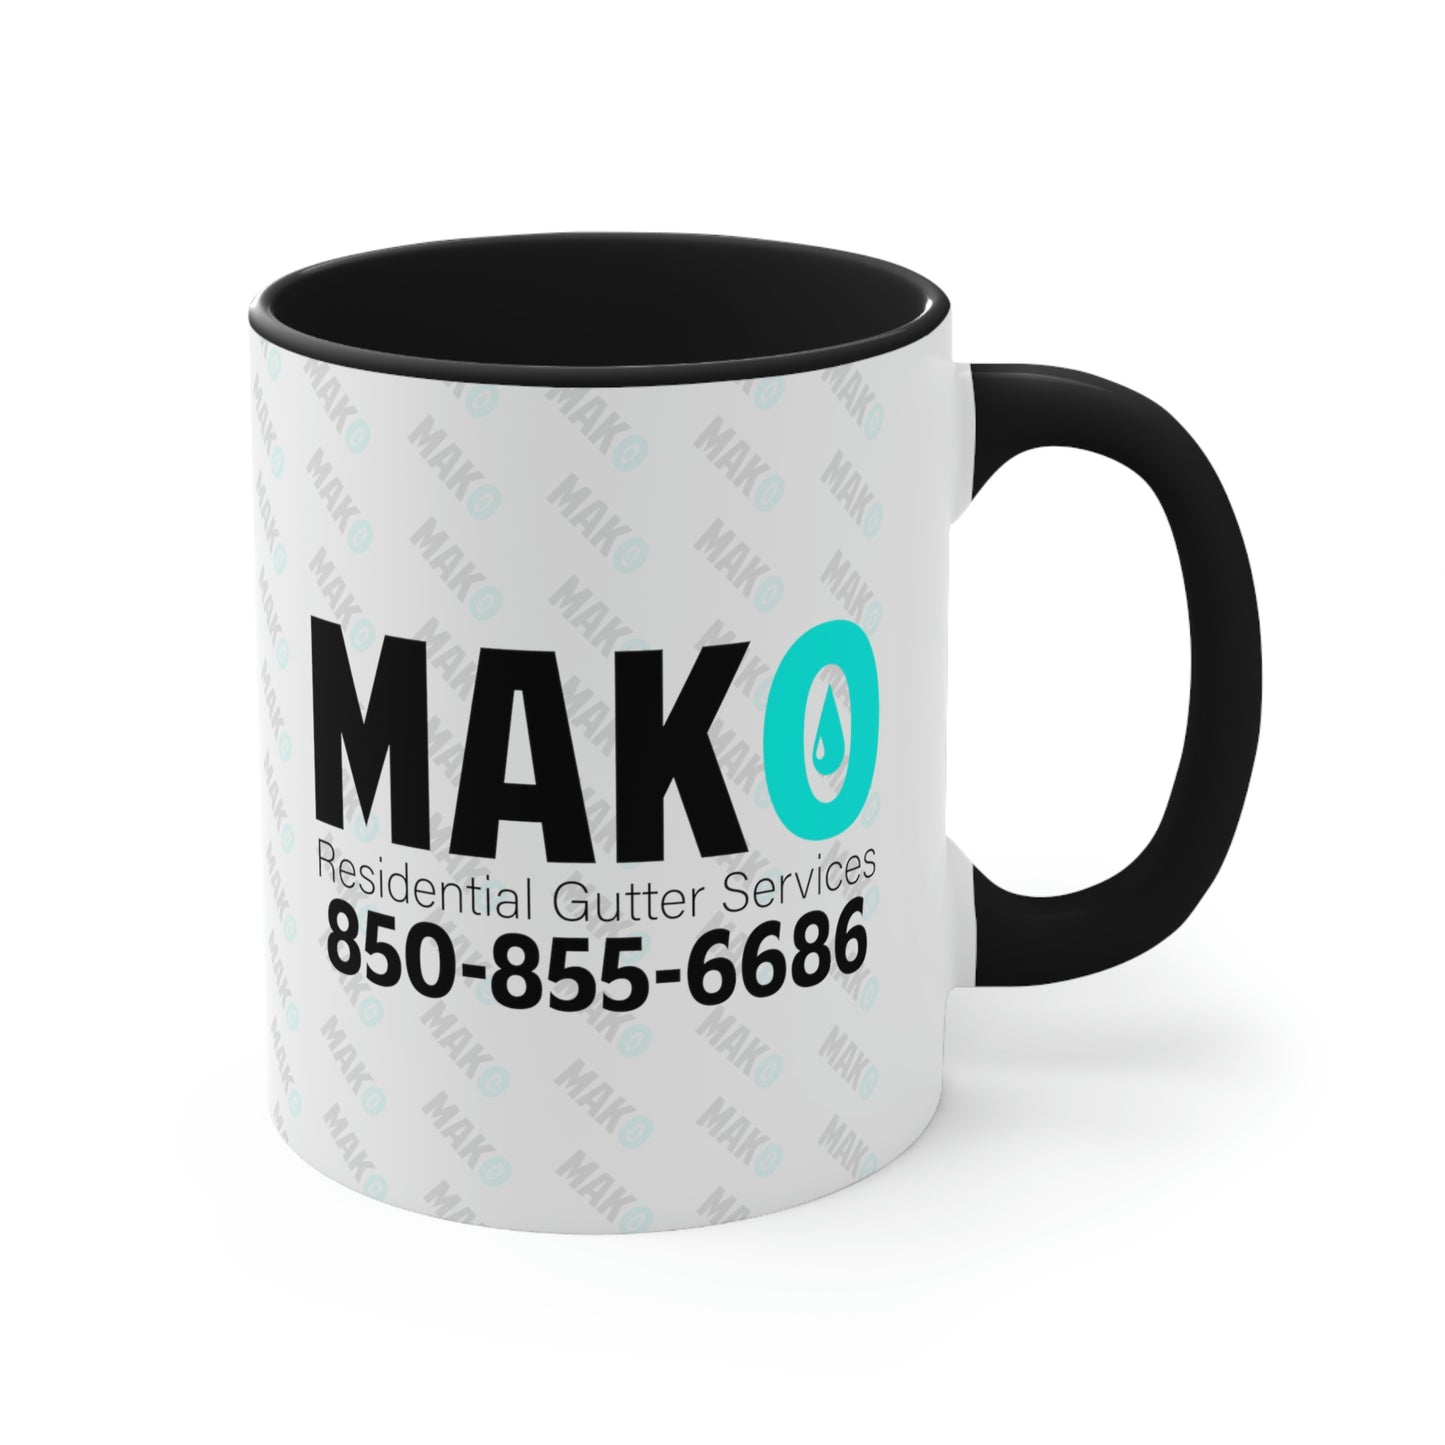 Taza de café MAKO, 11 oz